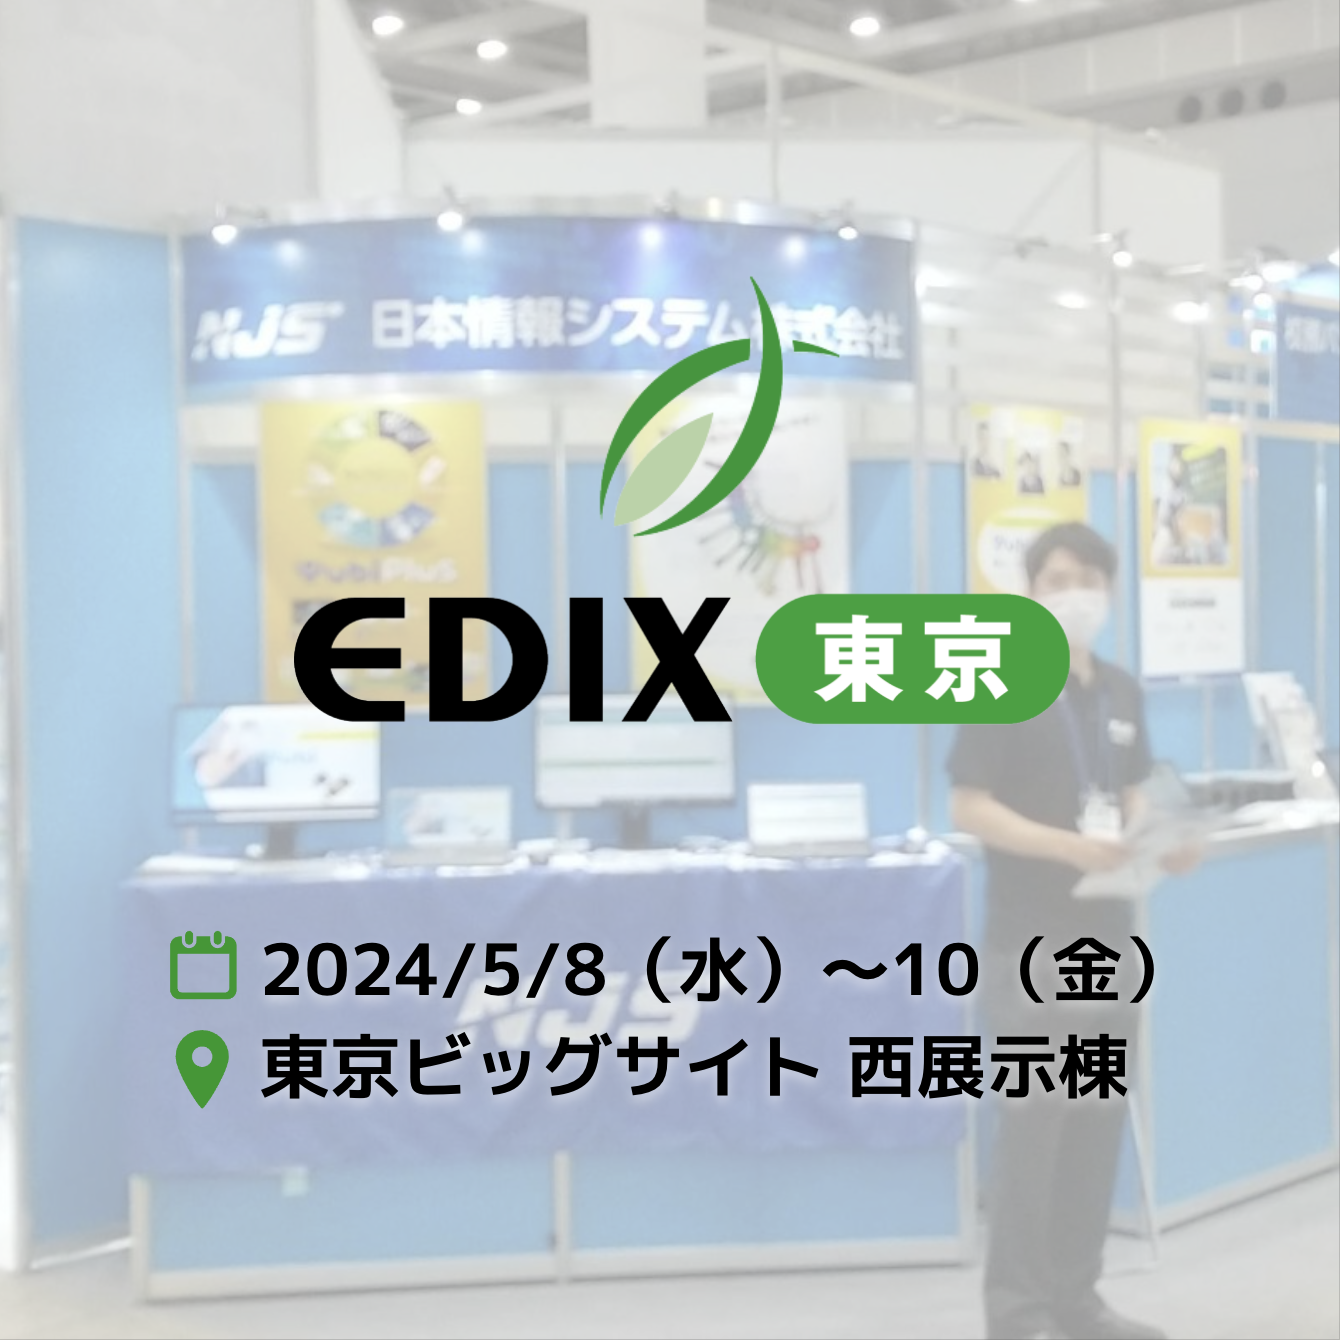 EDIX東京（教育総合展）出展のお知らせ